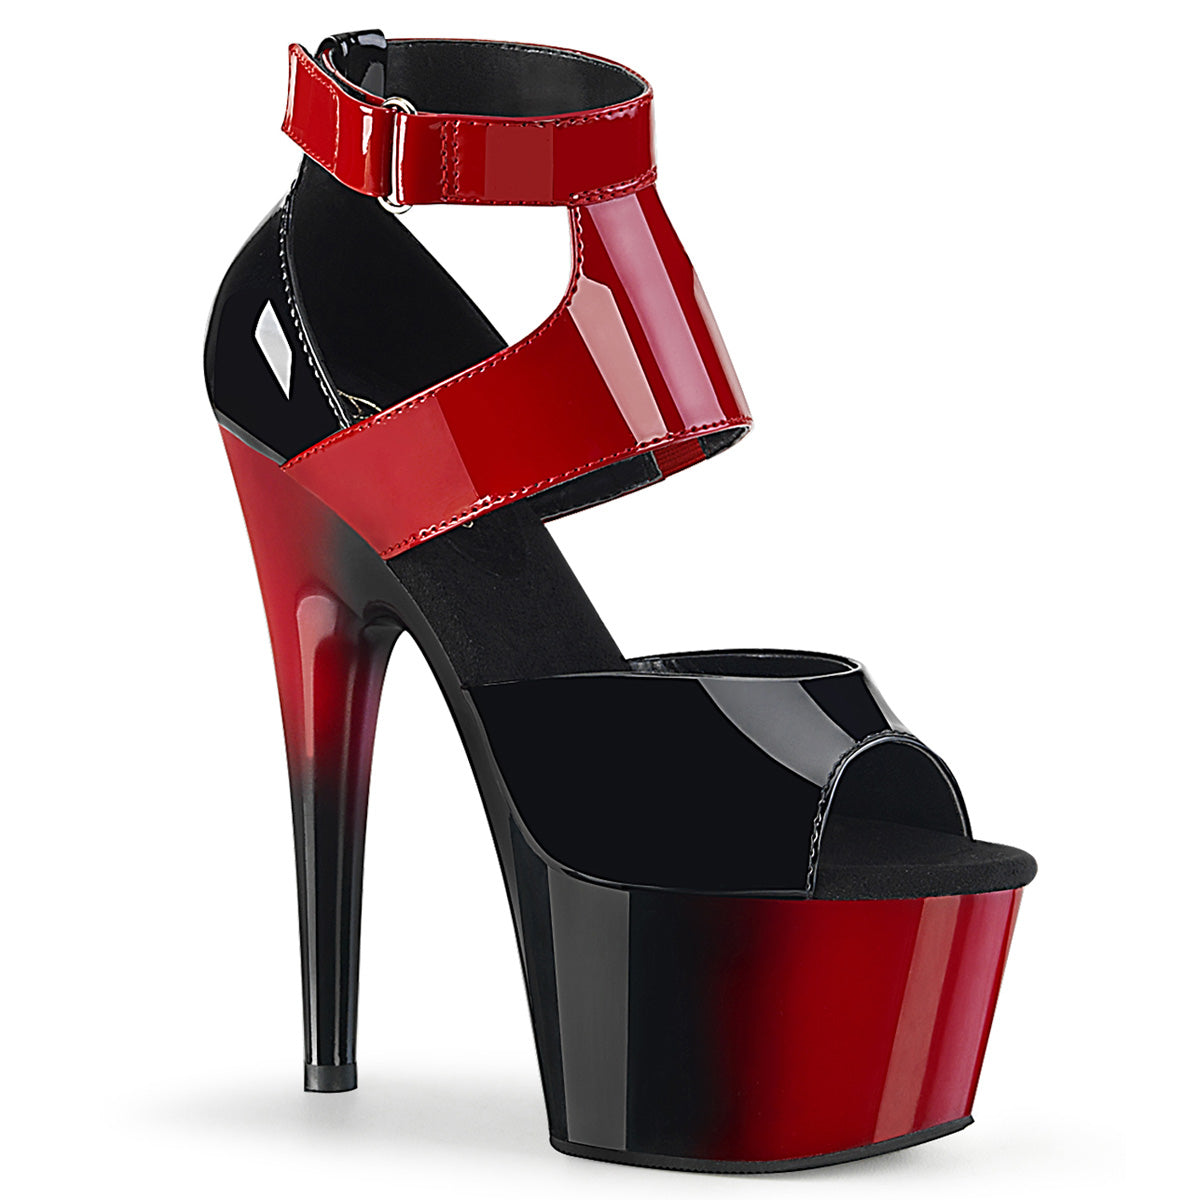 DASEN COD #706-16 Korean style high heels 2inch for women | Shopee  Philippines